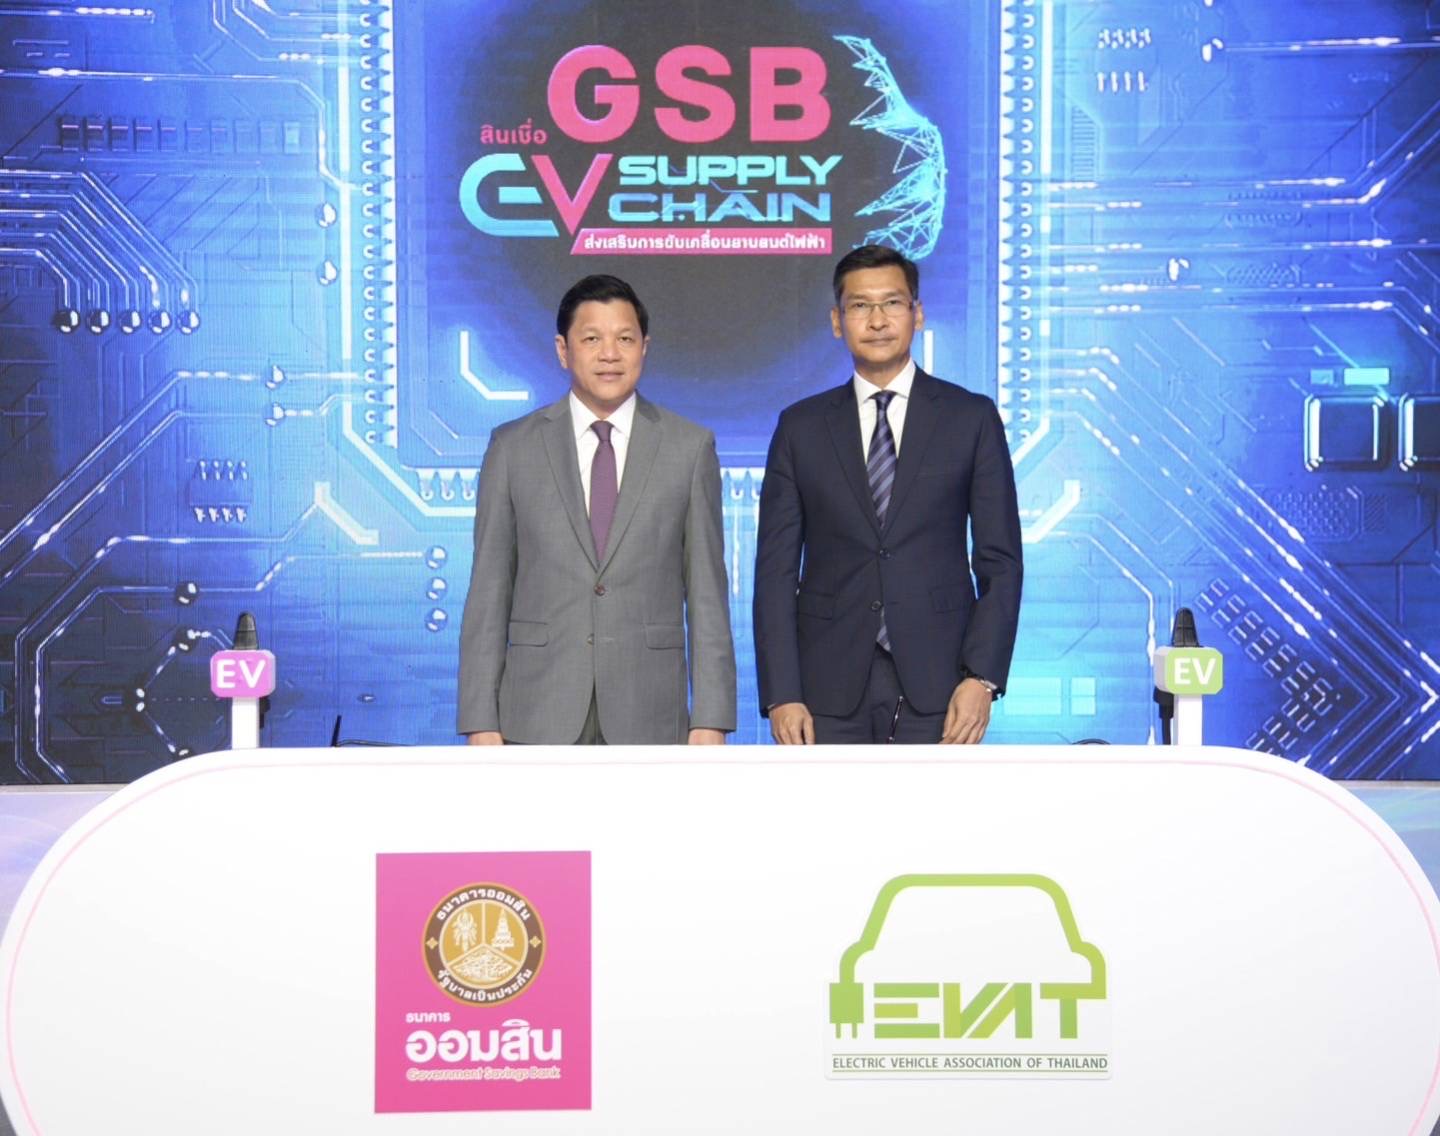 ออมสินผนึกสมาคมยานยนต์ไฟฟ้าไทย ออกสินเชื่อ “GSB EV Supply Chain” ดอกเบี้ยต่ำ 3.745% ต่อปี